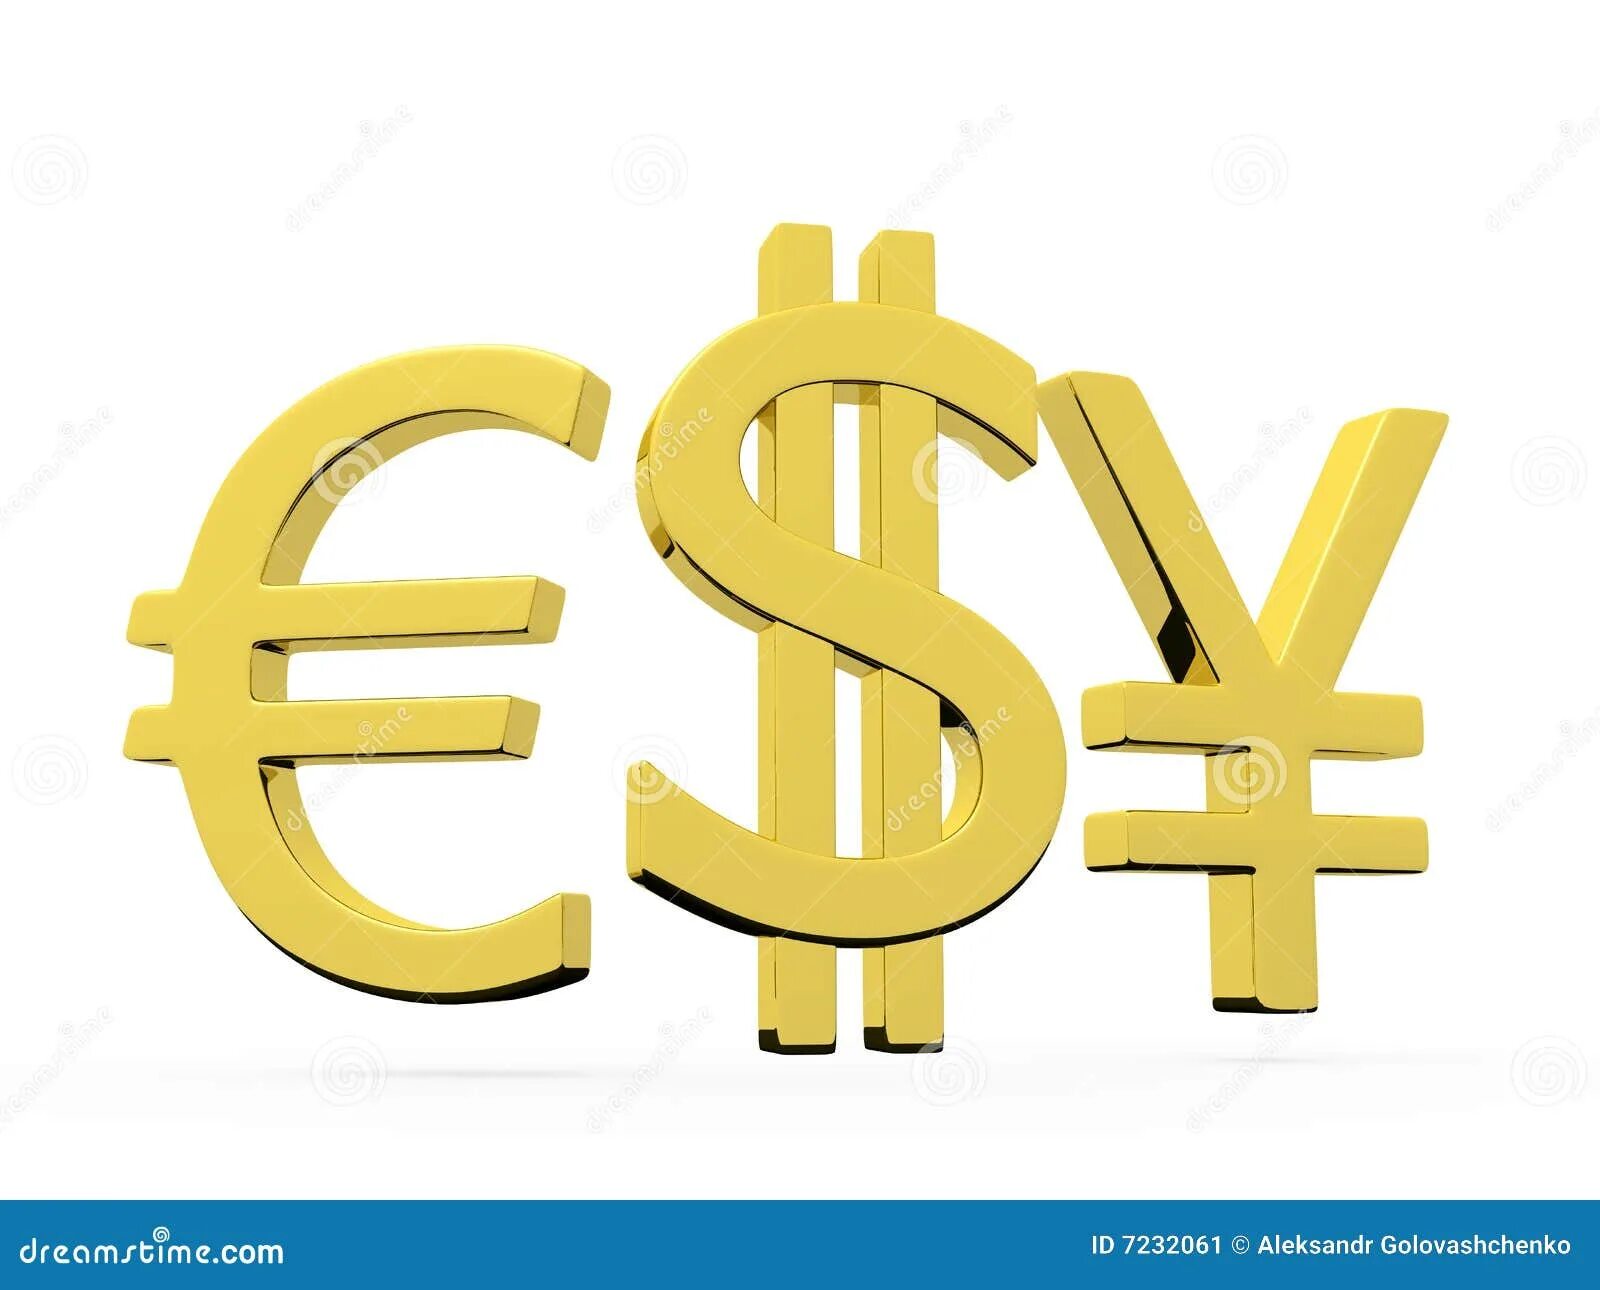 Евро доллары песня. Йена евро доллар. Знак доллара и евро. Значок евро и доллара. Евро-йена-до доллар.